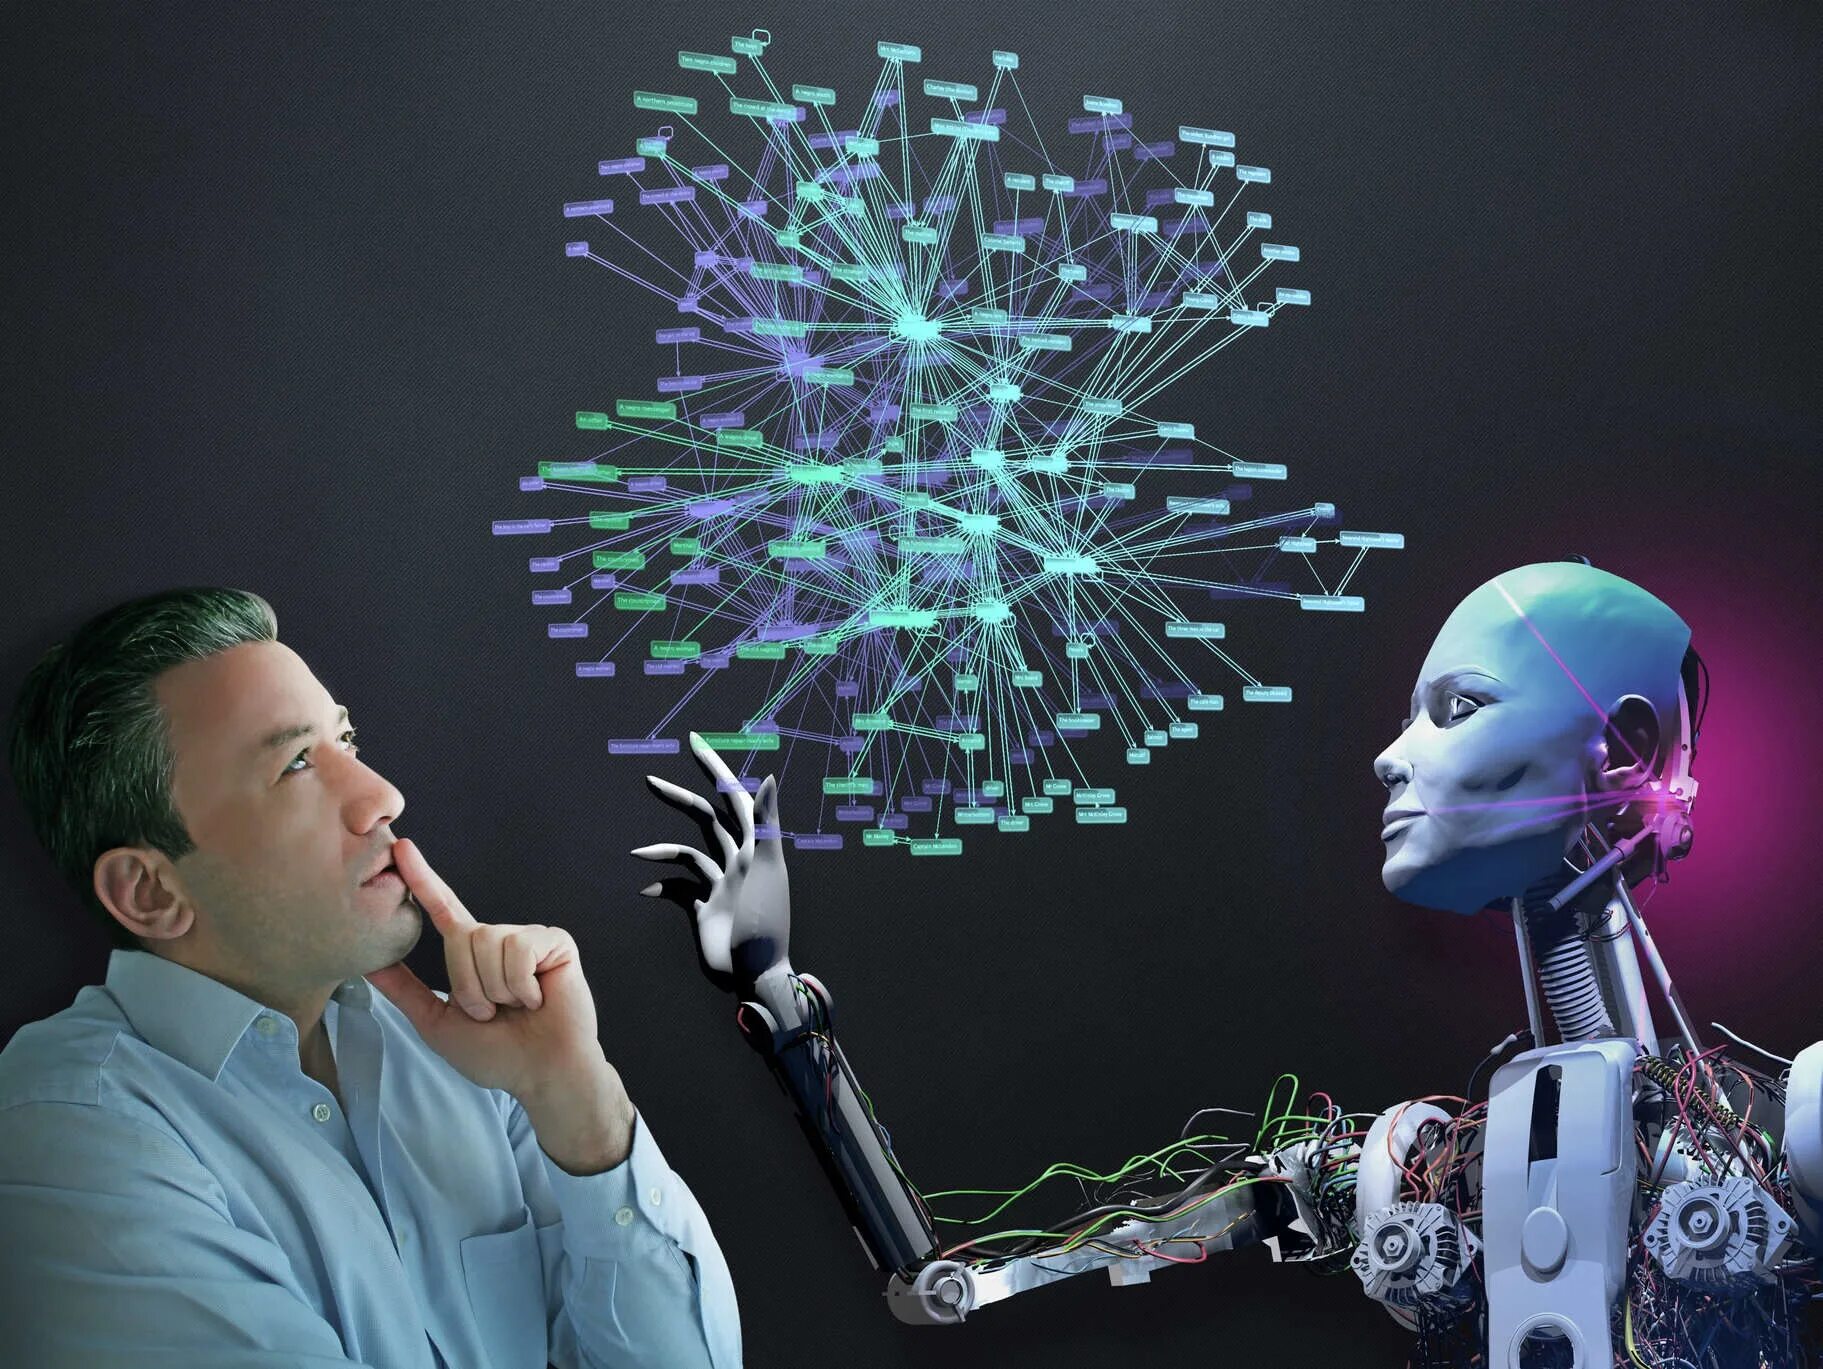 Изменения и новые открытия. Человек и технологии. Робот технологии. Искусственный интеллект. Наука и технологии.